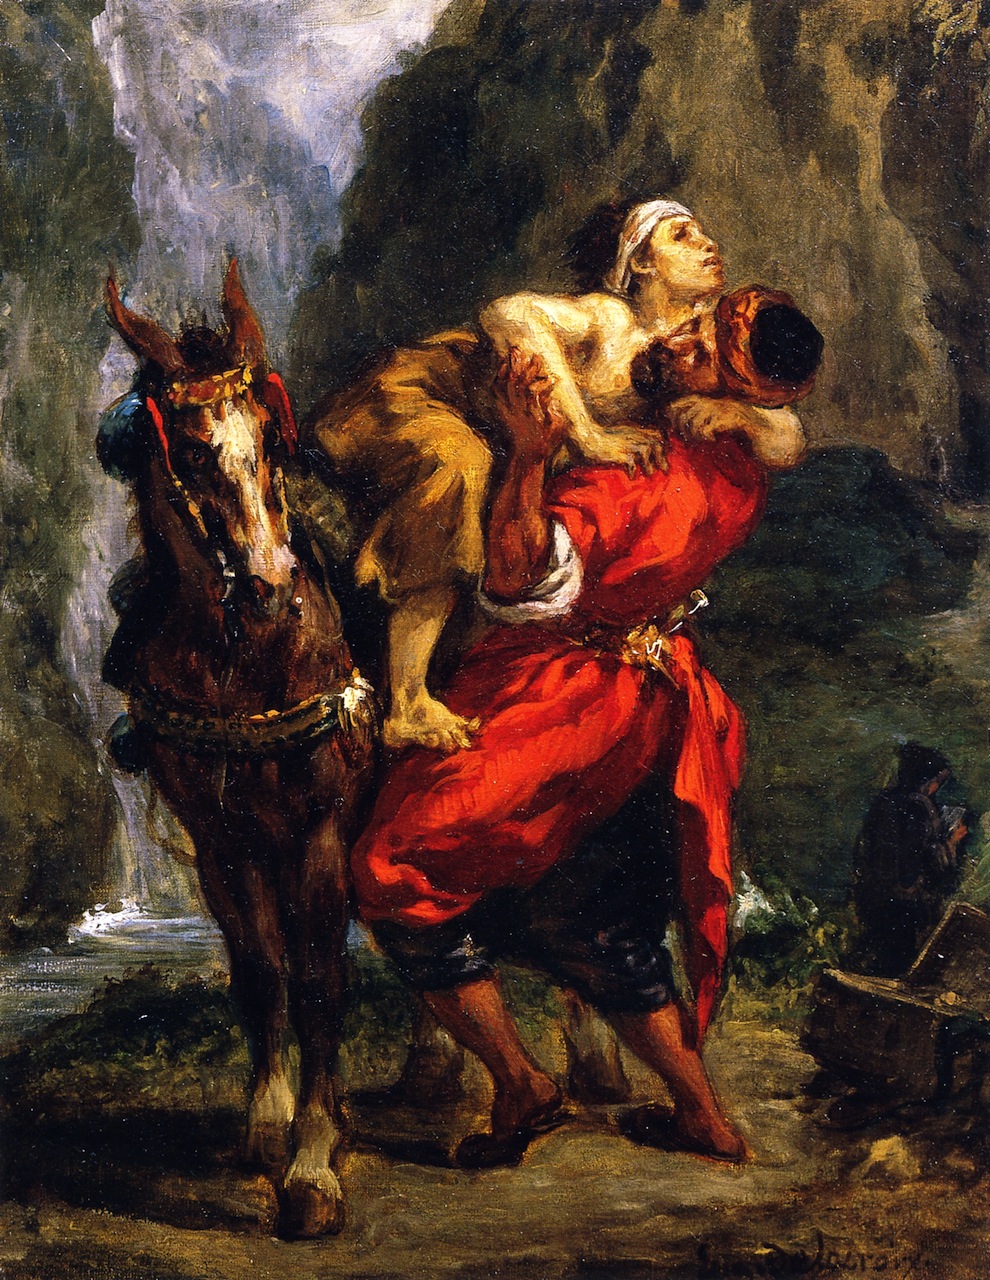 Eugene+Delacroix-1798-1863 (247).jpg